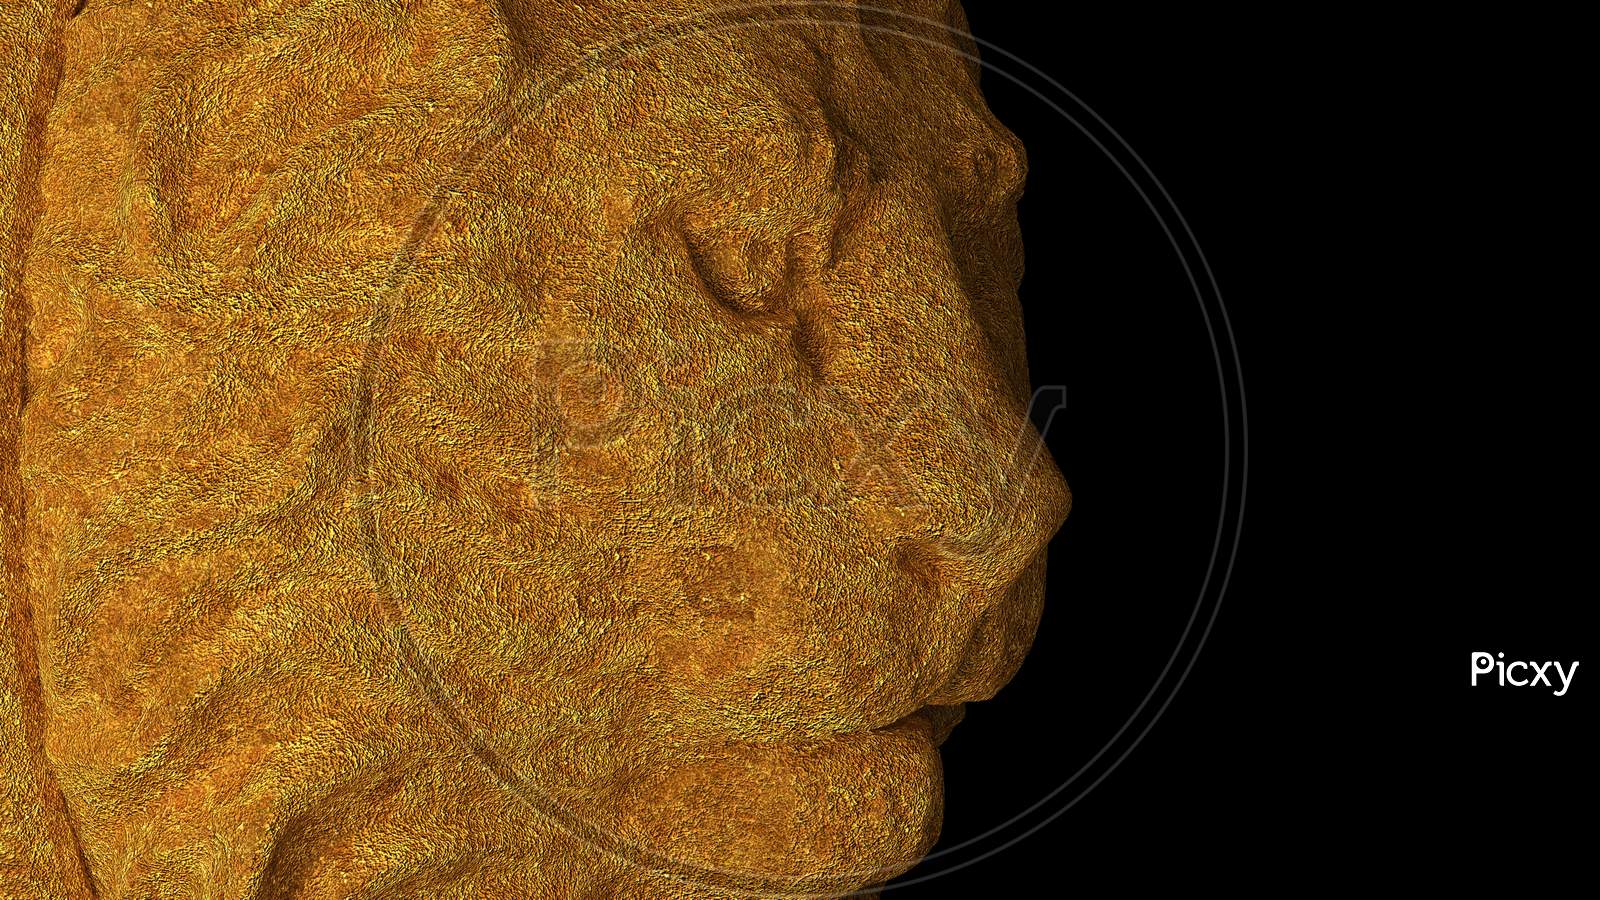 Lion Close Up Face Showing On Black Background, Illustration. 3D Rendered.